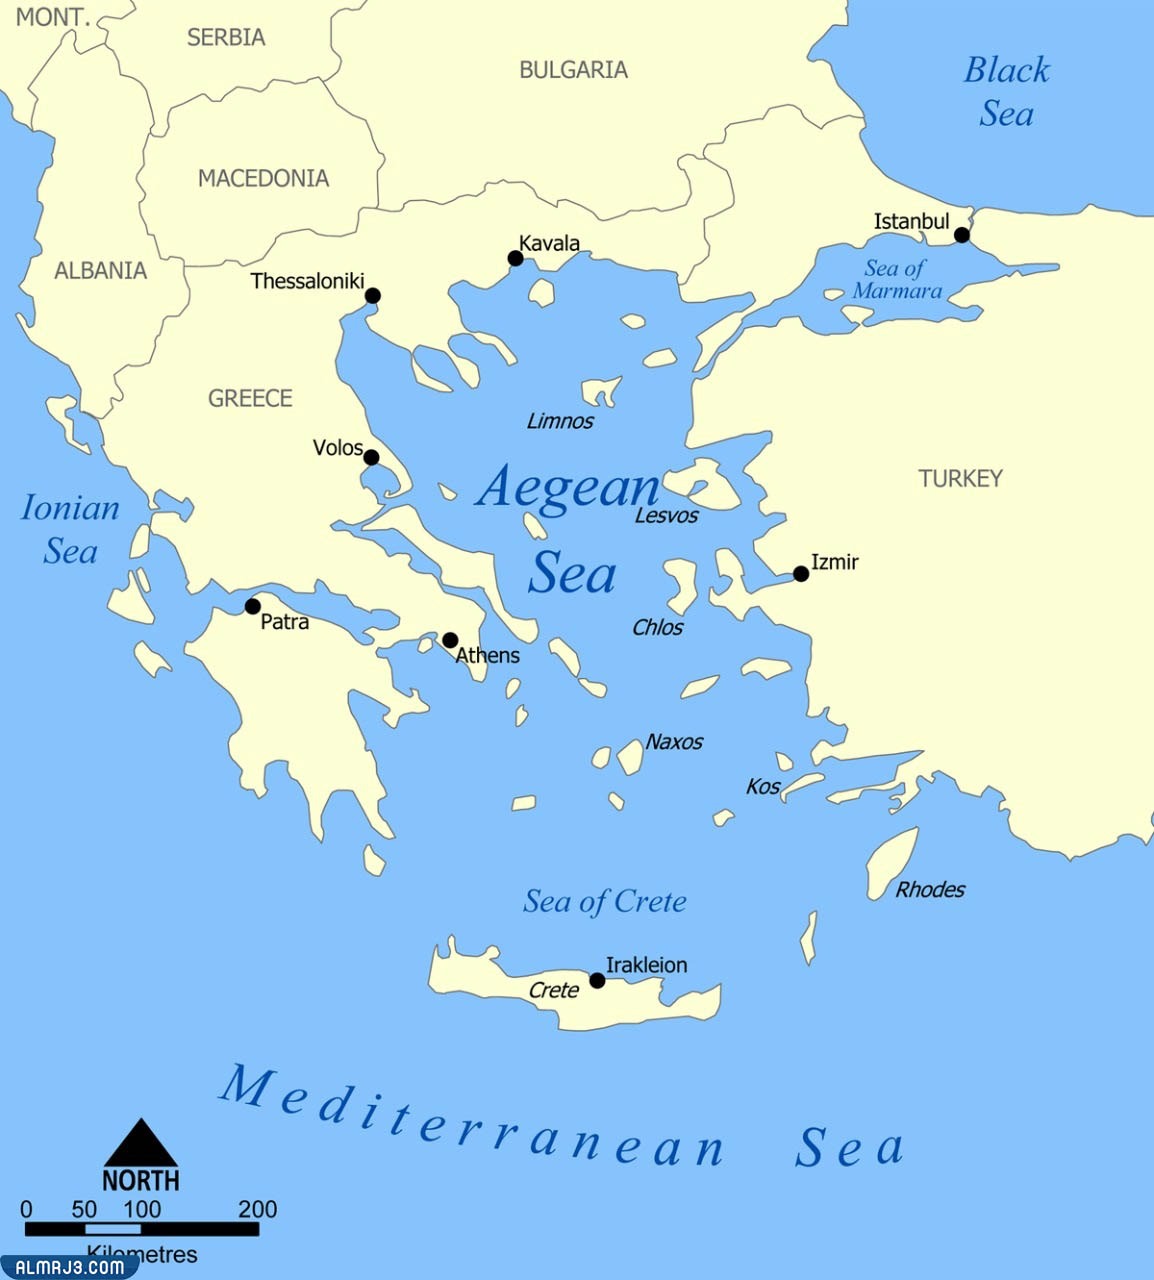 ماهو البحر الذي يفصل بين تركيا واليونان